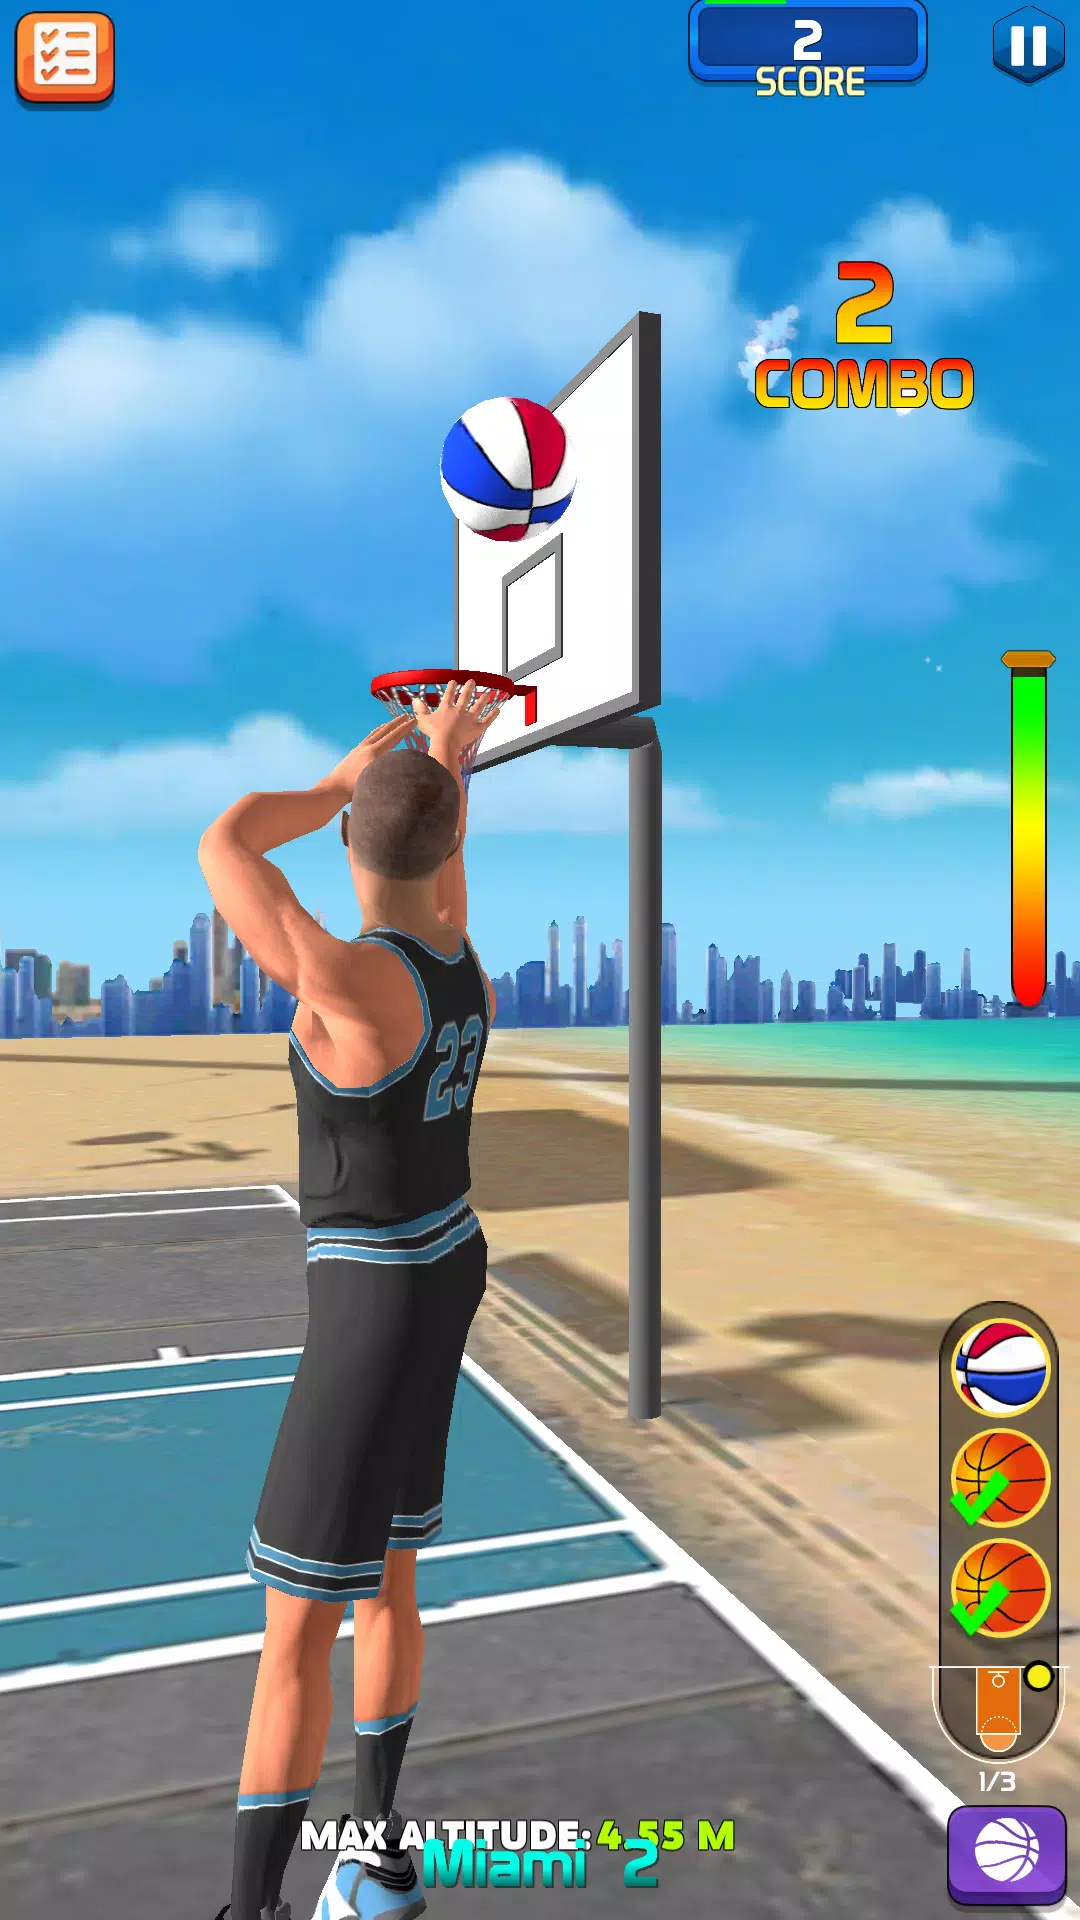 三分球大师街头灌篮游戏游戏手机版下载-三分球大师街头灌篮游戏最新版下载